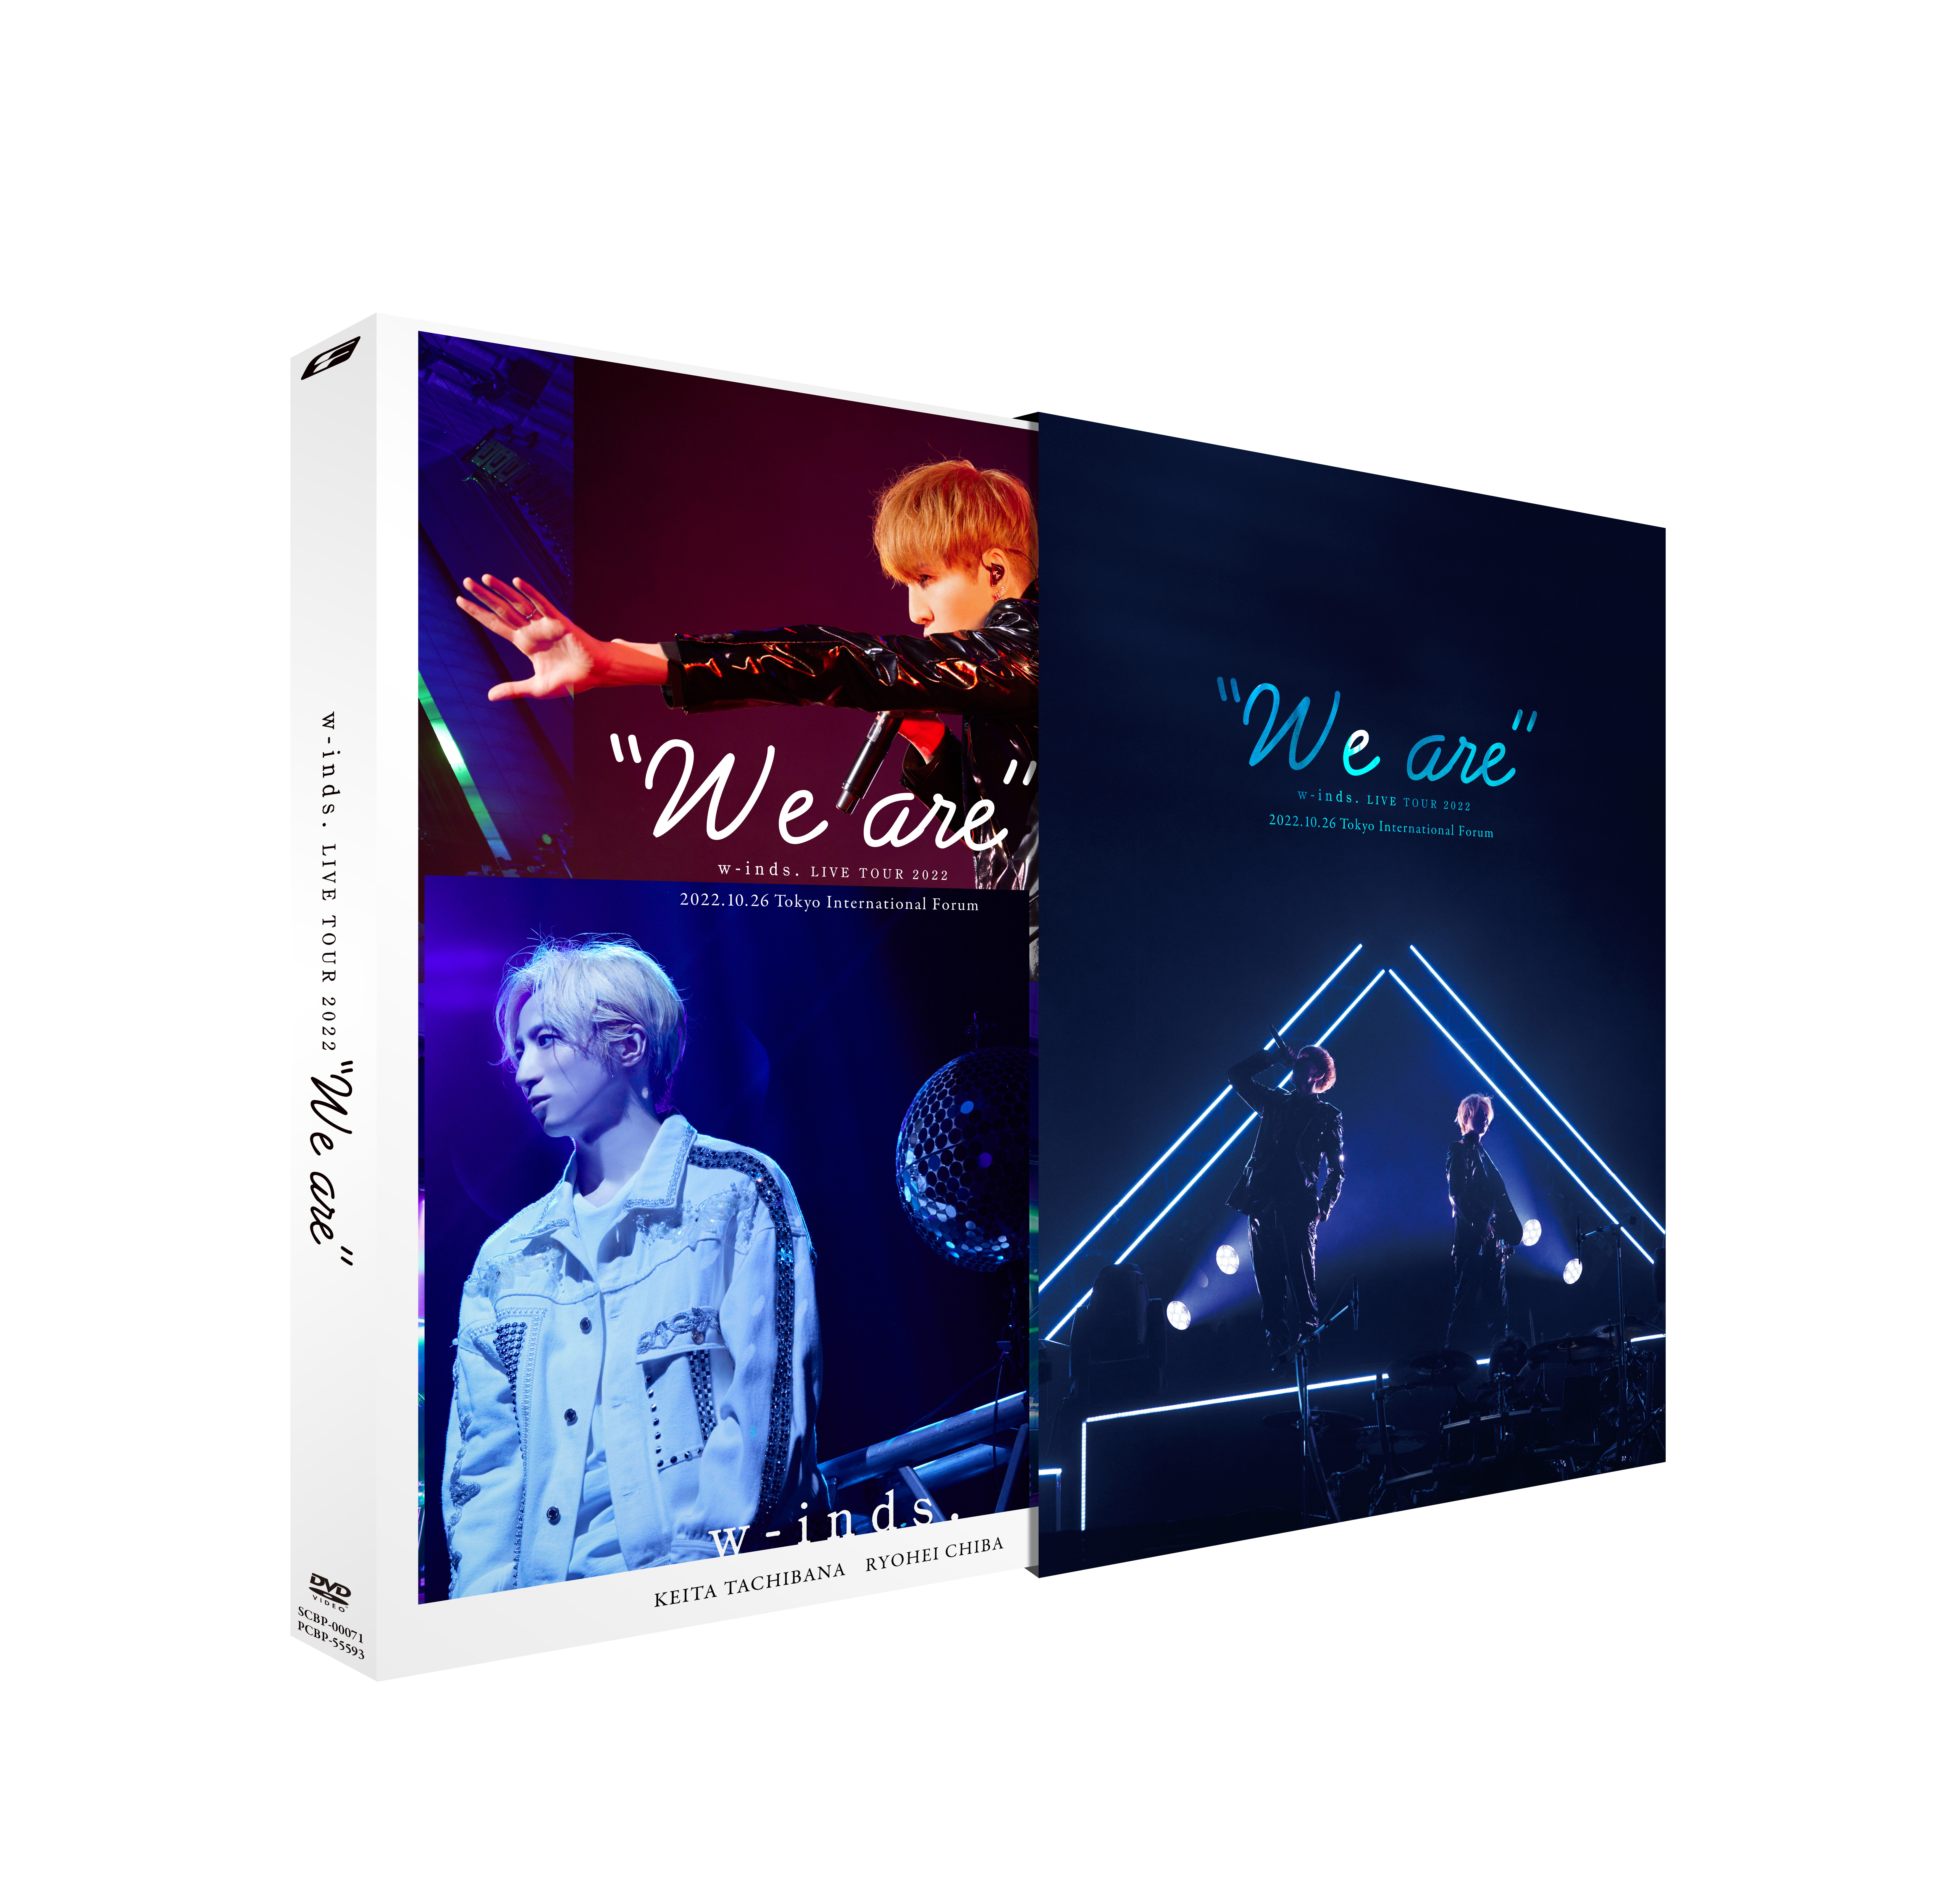 映像作品「w-inds. LIVE TOUR 2022 “We are”」3/1(水)発売！《特典絵柄 